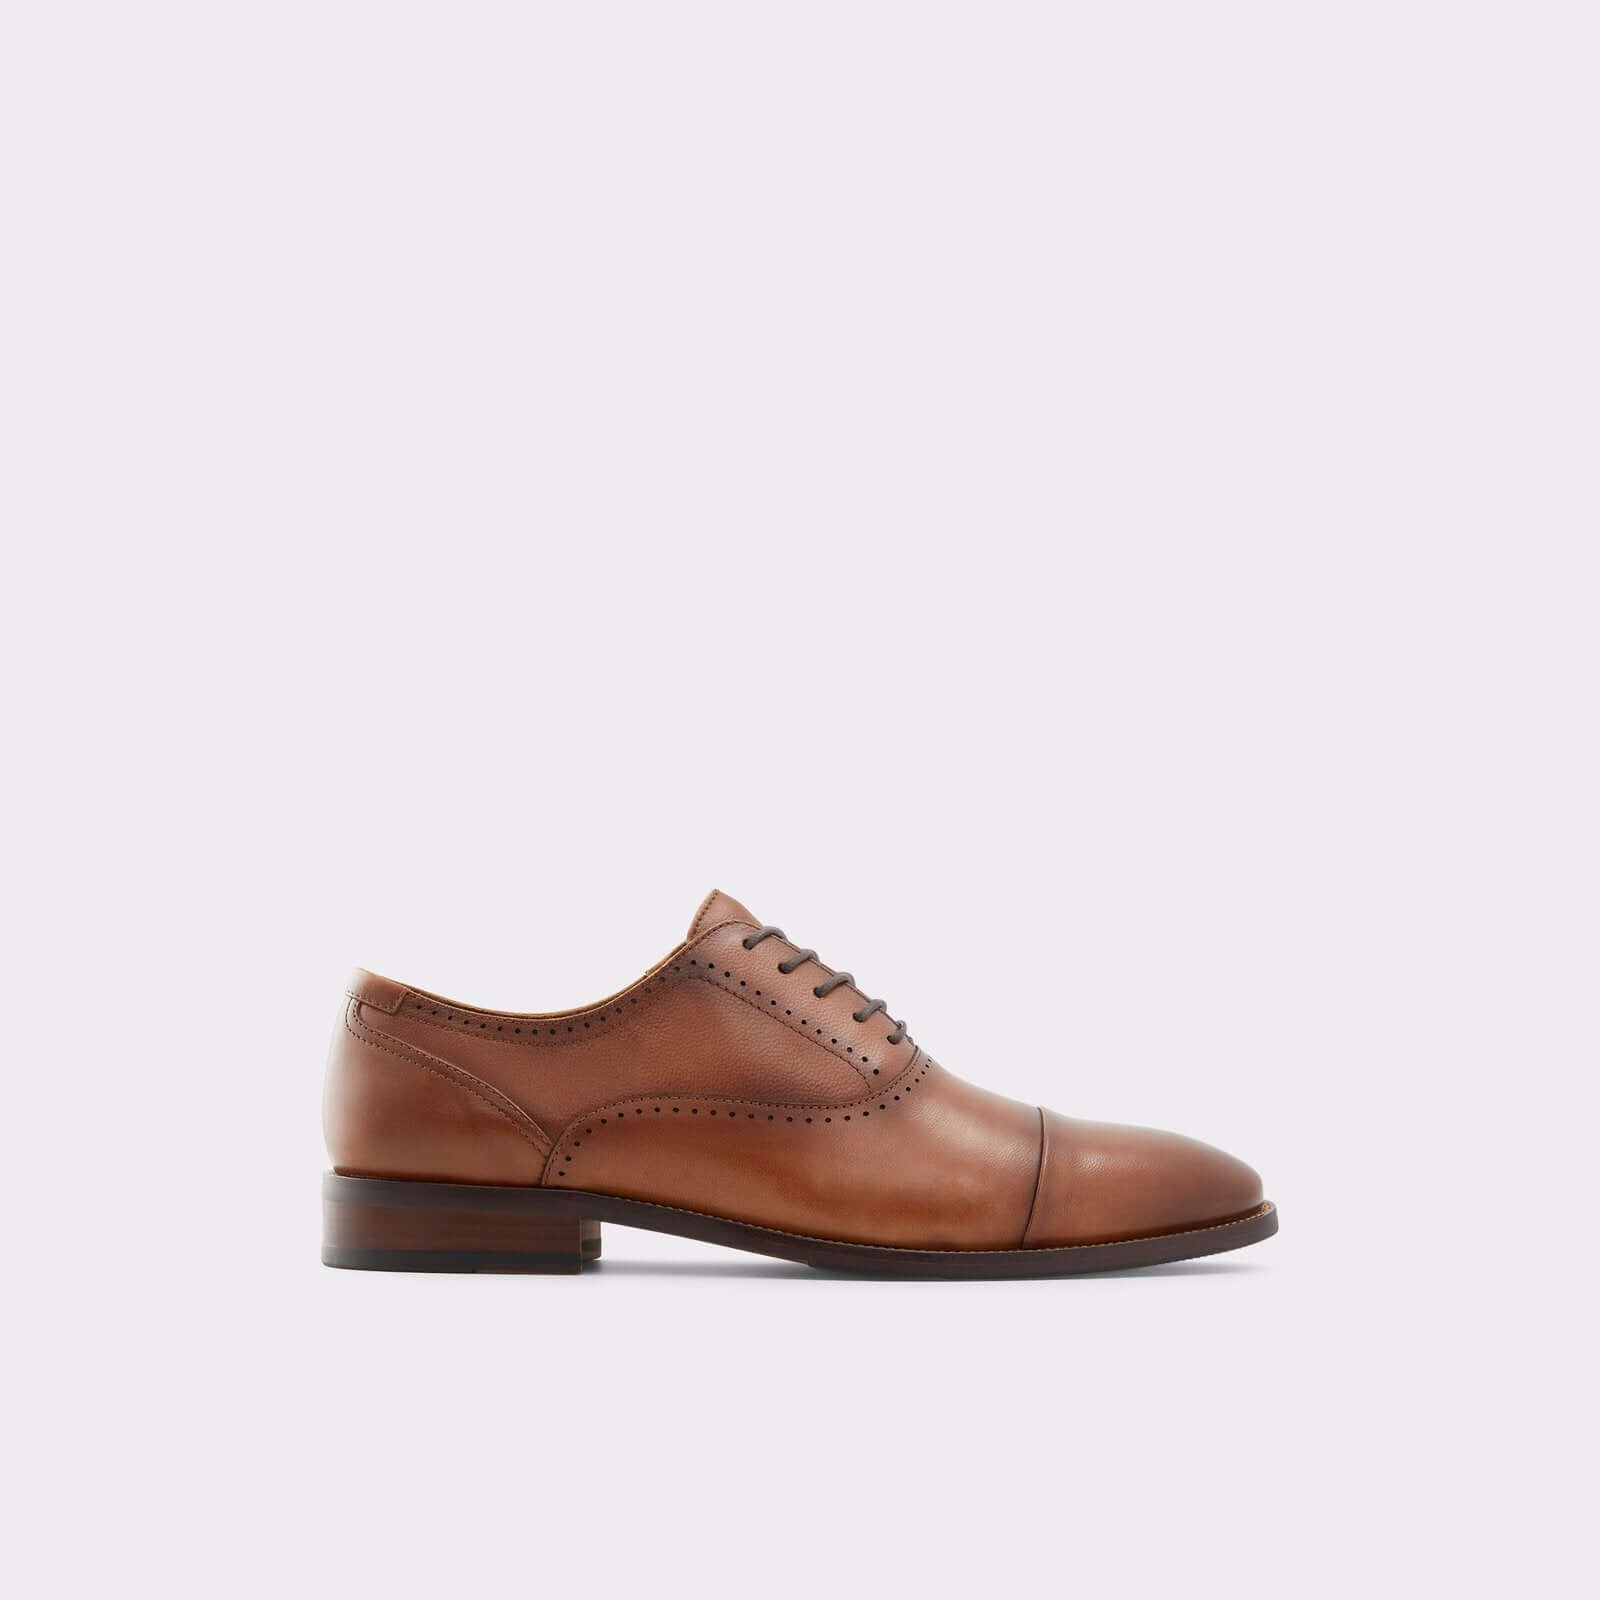 Aldo Men’s Lace Up Shoes Abawienflex (Cognac)